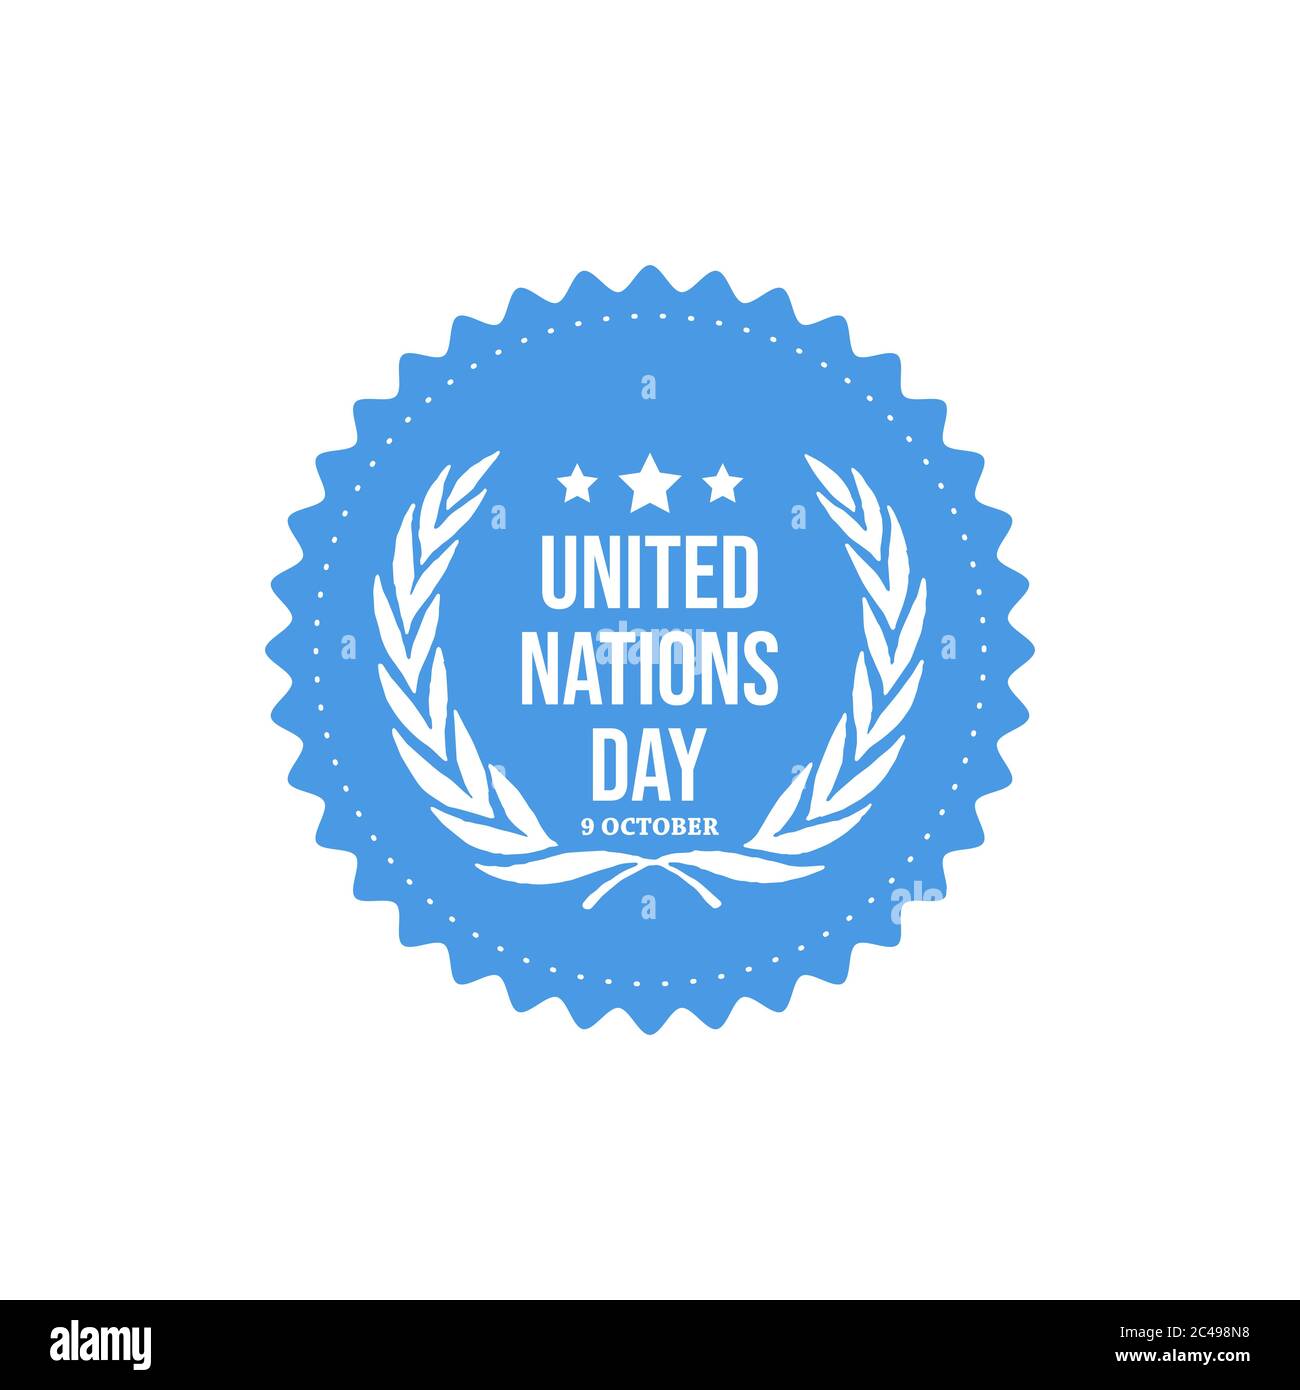 Banner ngày Liên Hiệp Quốc: Bạn đang tìm kiếm một banner thật chuyên nghiệp và đẹp mắt để kỷ niệm ngày quốc tế. Chúng tôi sẽ cung cấp cho bạn một banner độc đáo và ấn tượng, đánh dấu sự kiện lịch sử quan trọng này.